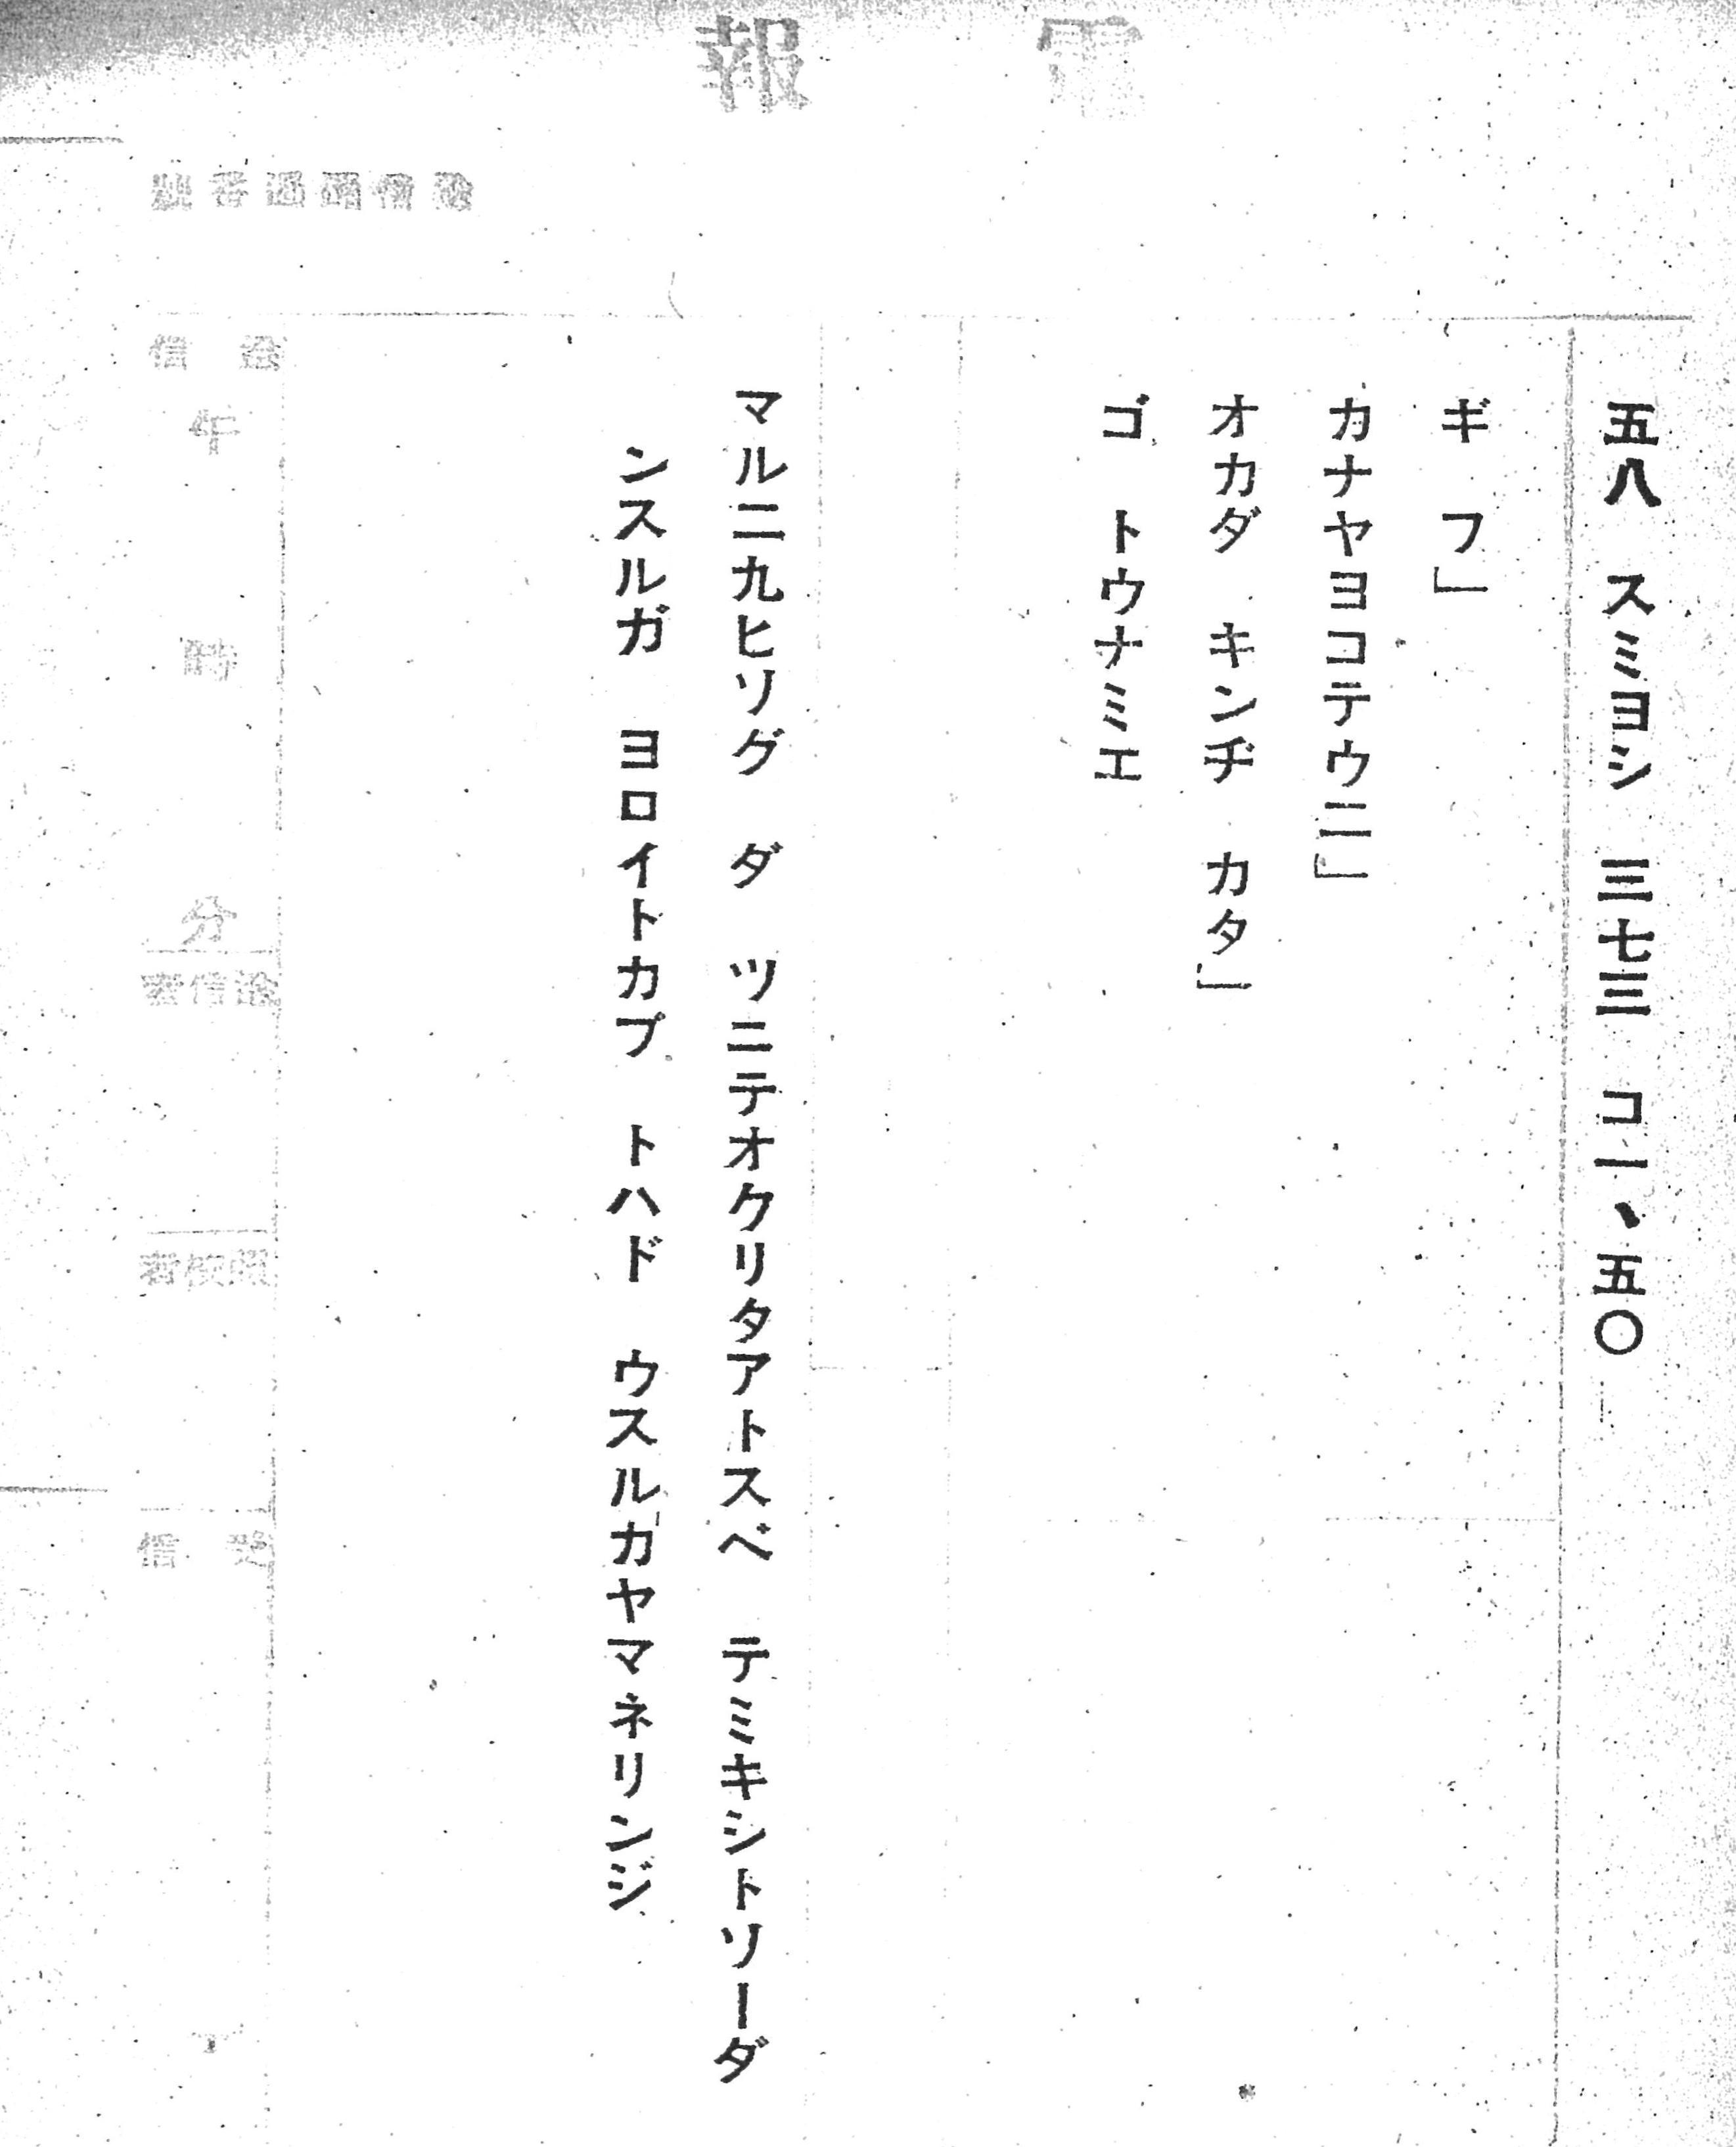 和文電報送達紙のタイプ打ち例文（末尾に濁点が来る場合）